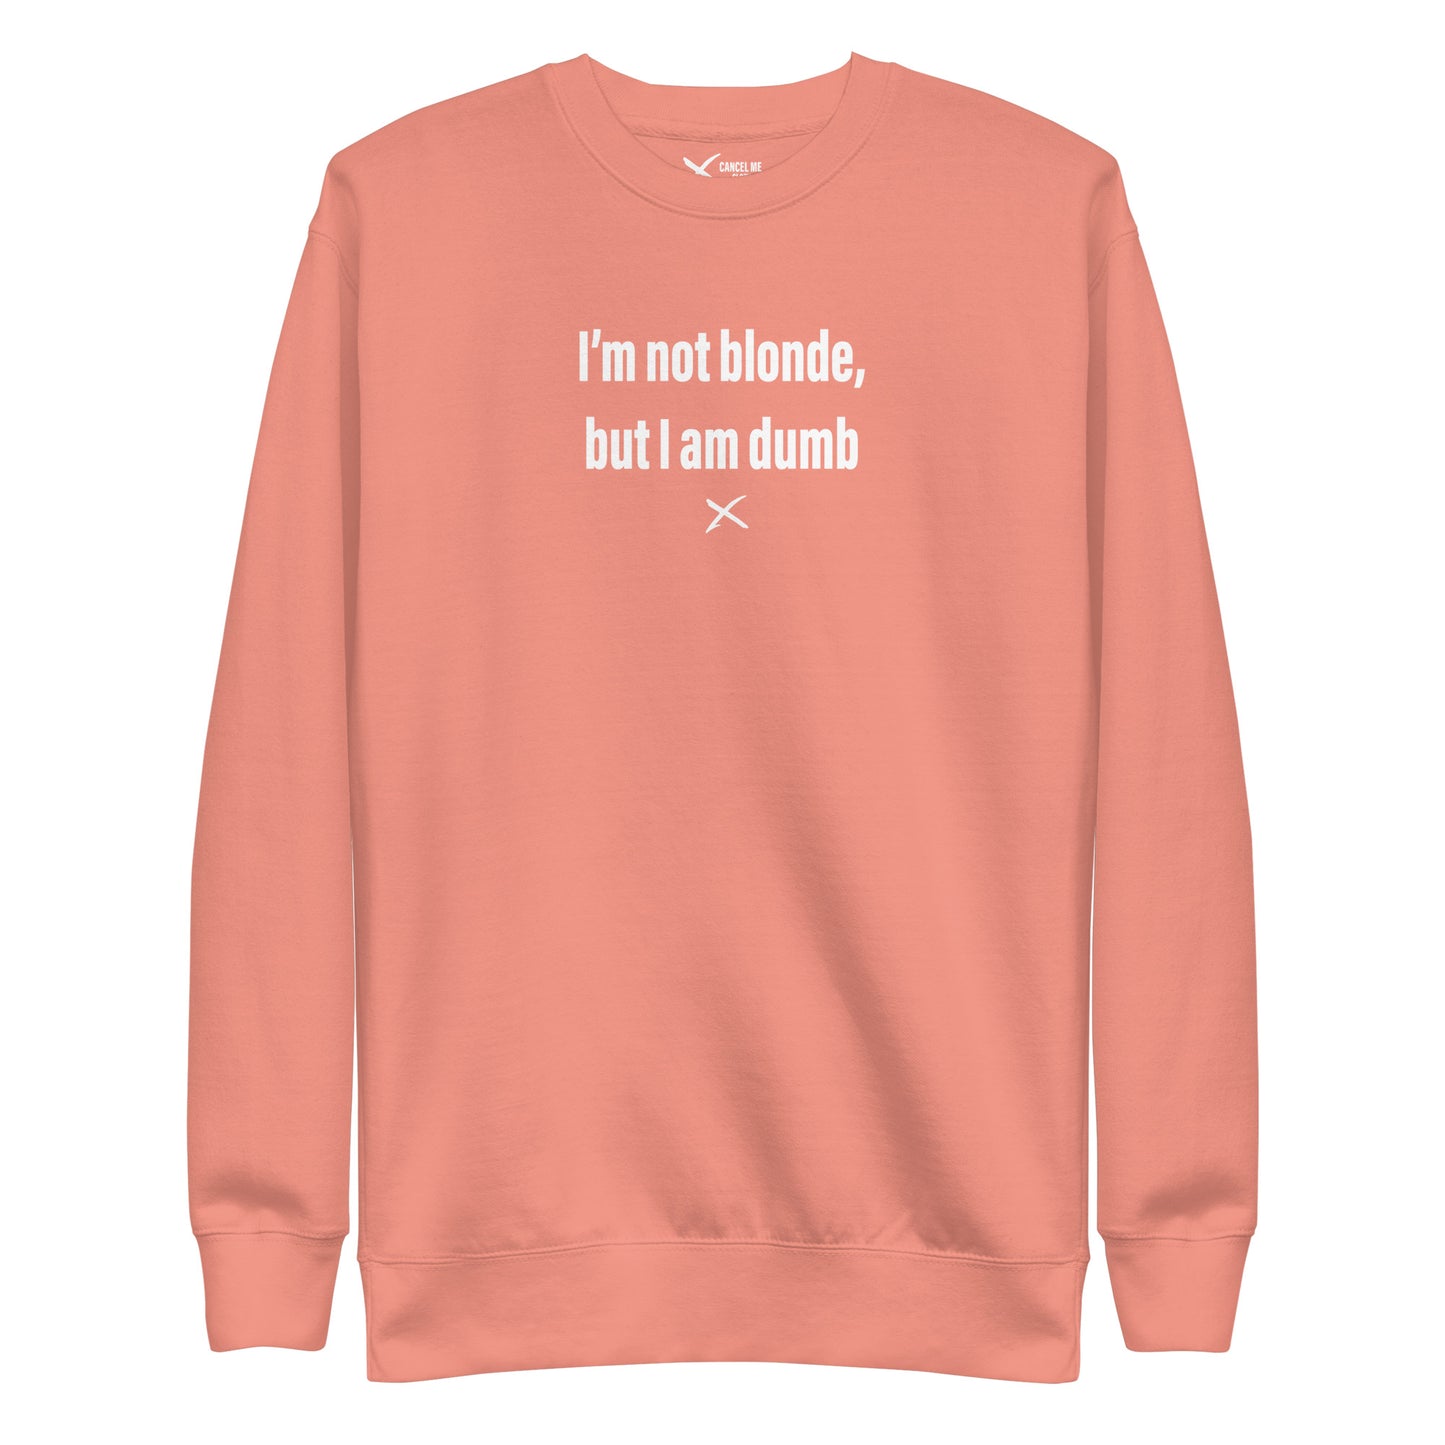 I'm not blonde, but I am dumb - Sweatshirt